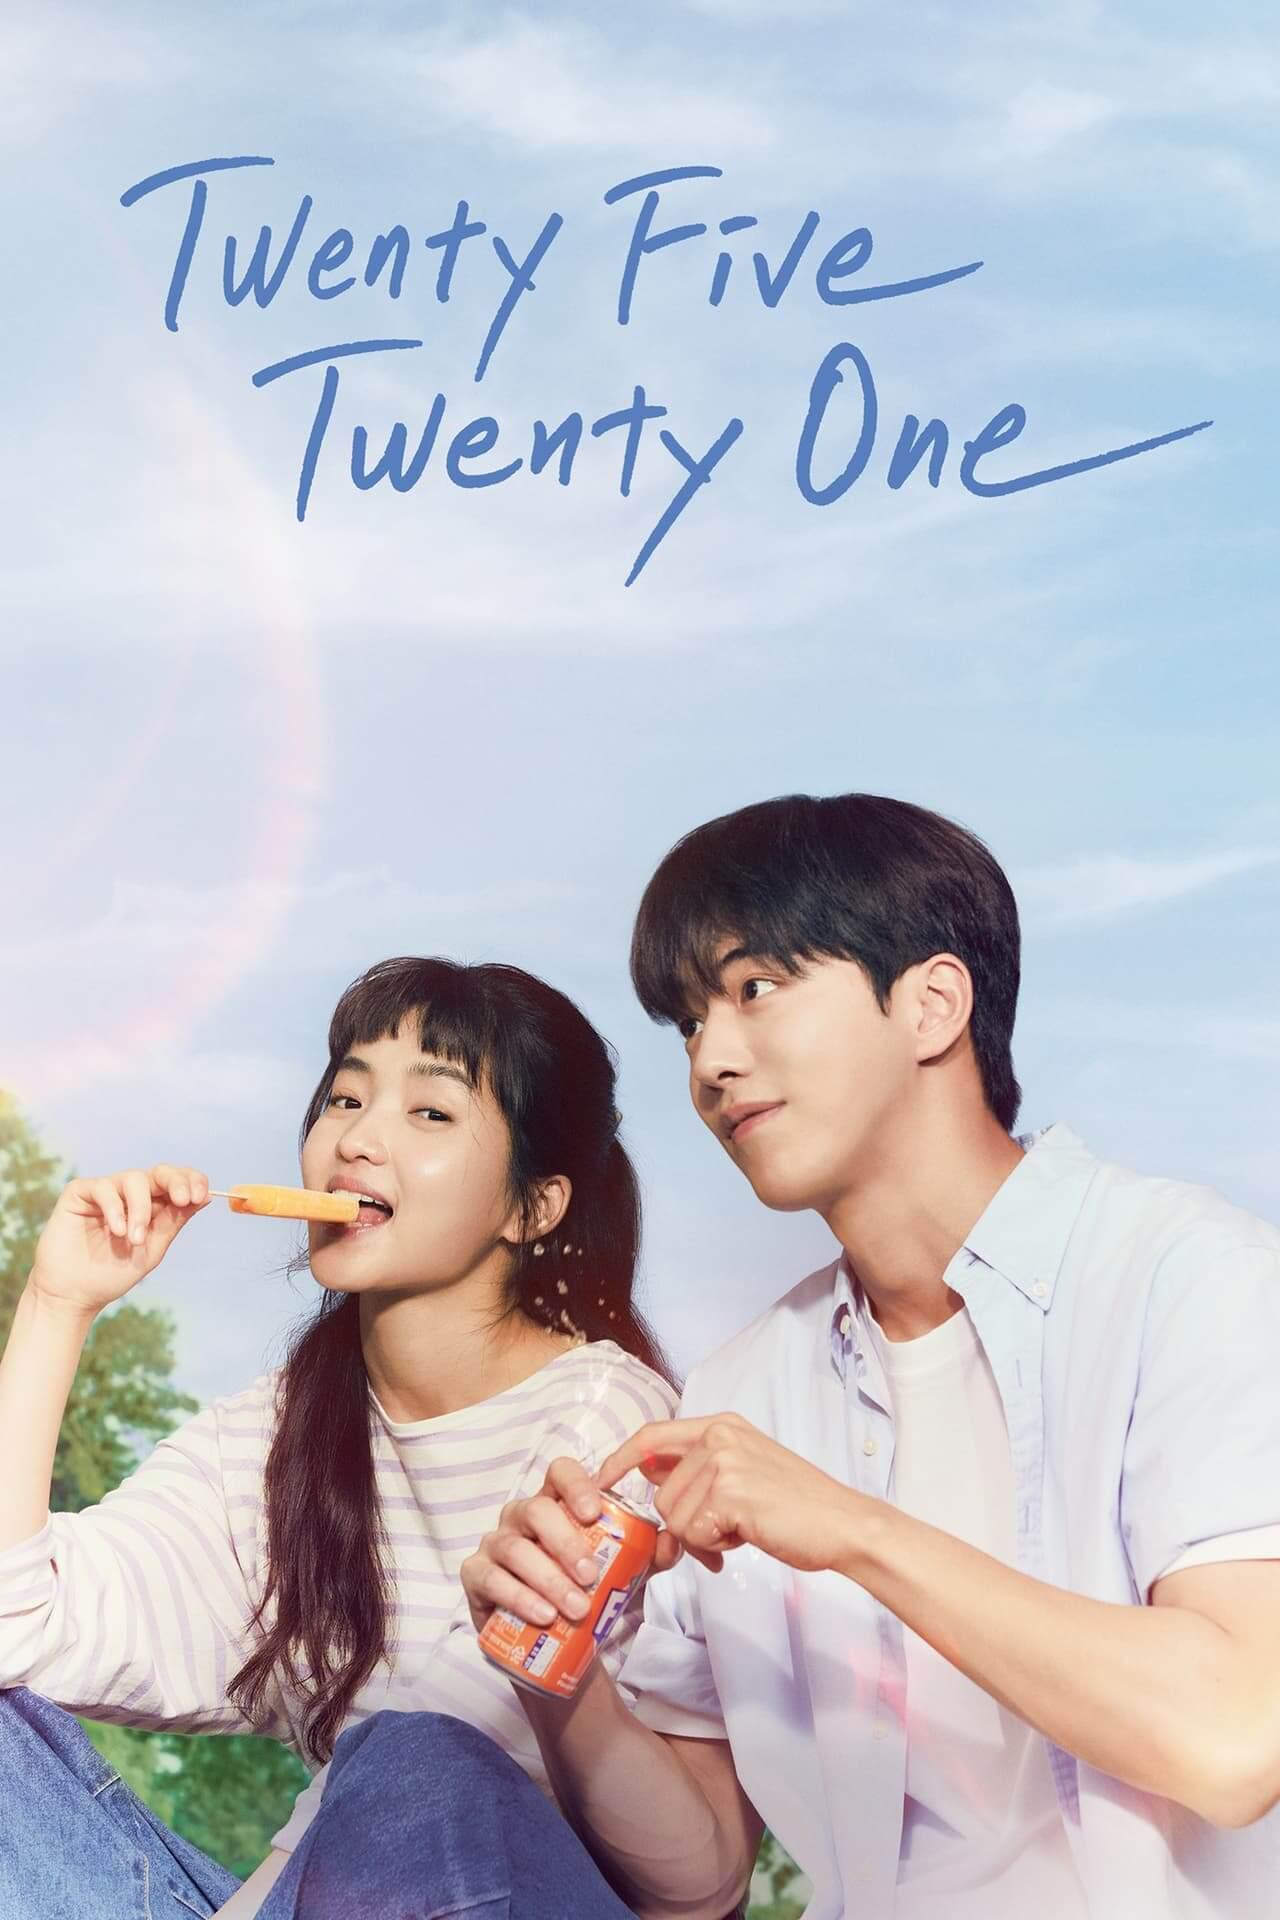 TV ratings for Twenty-Five Twenty-One (스물다섯 스물하나) in New Zealand. tvN TV series